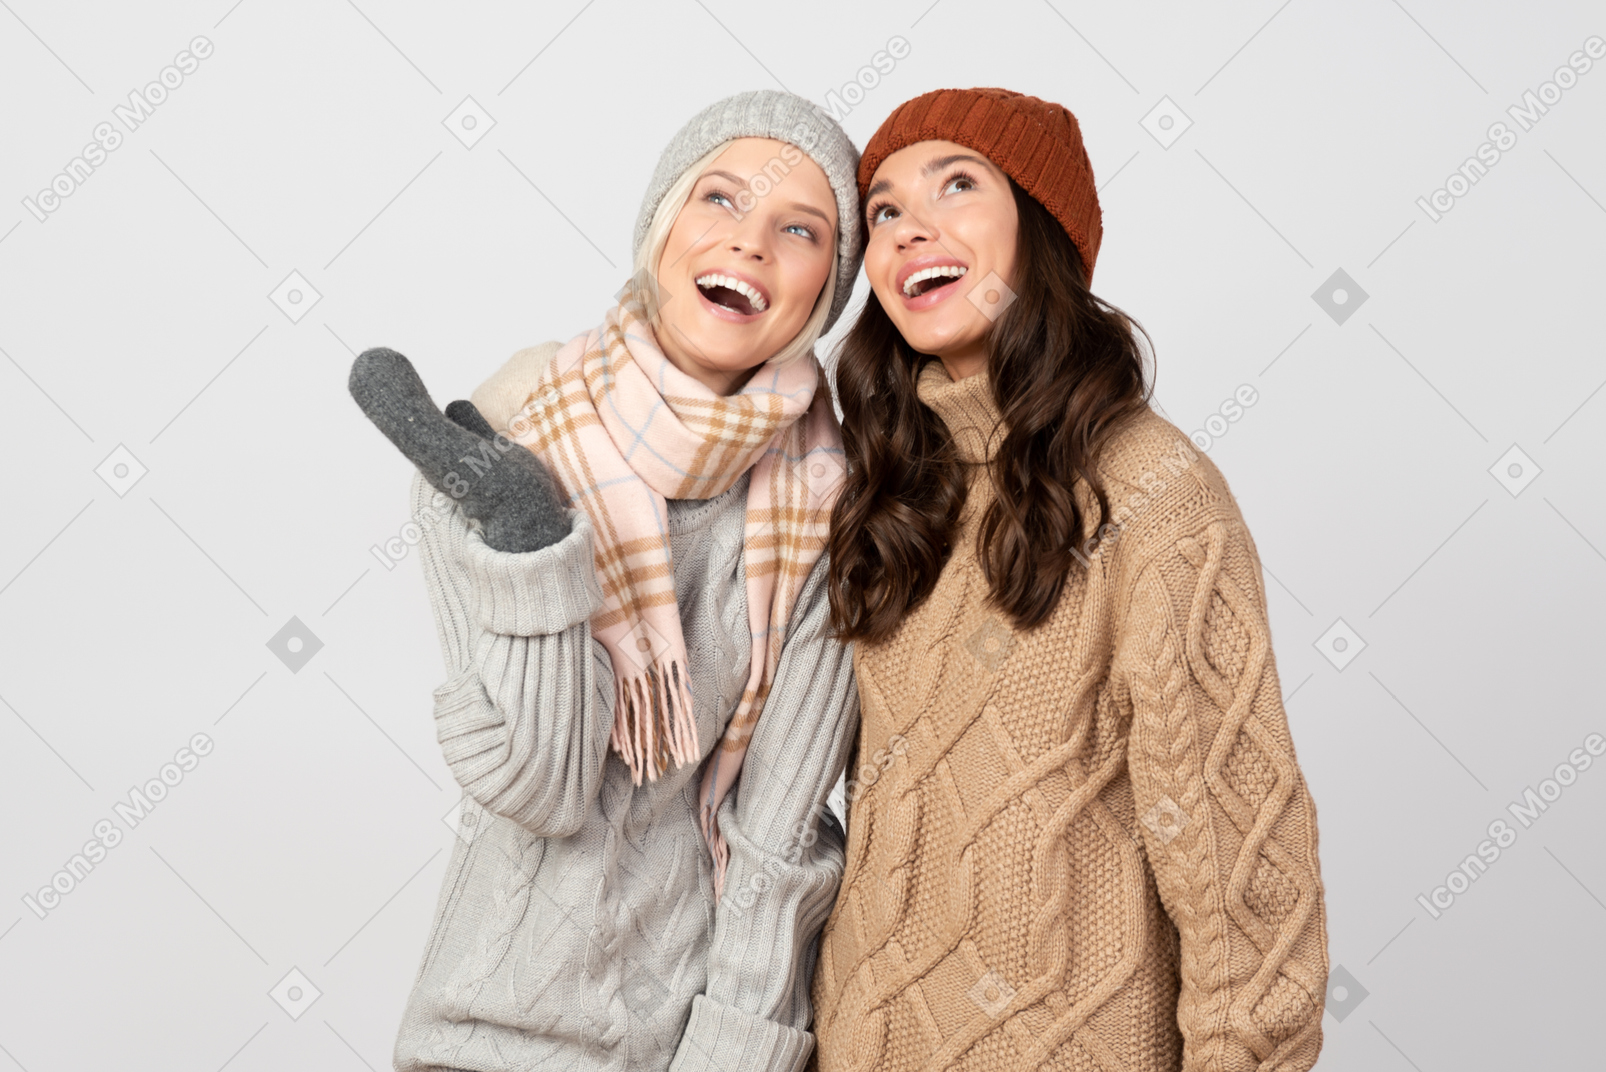 El clima del suéter es aún mejor cuando estamos juntos